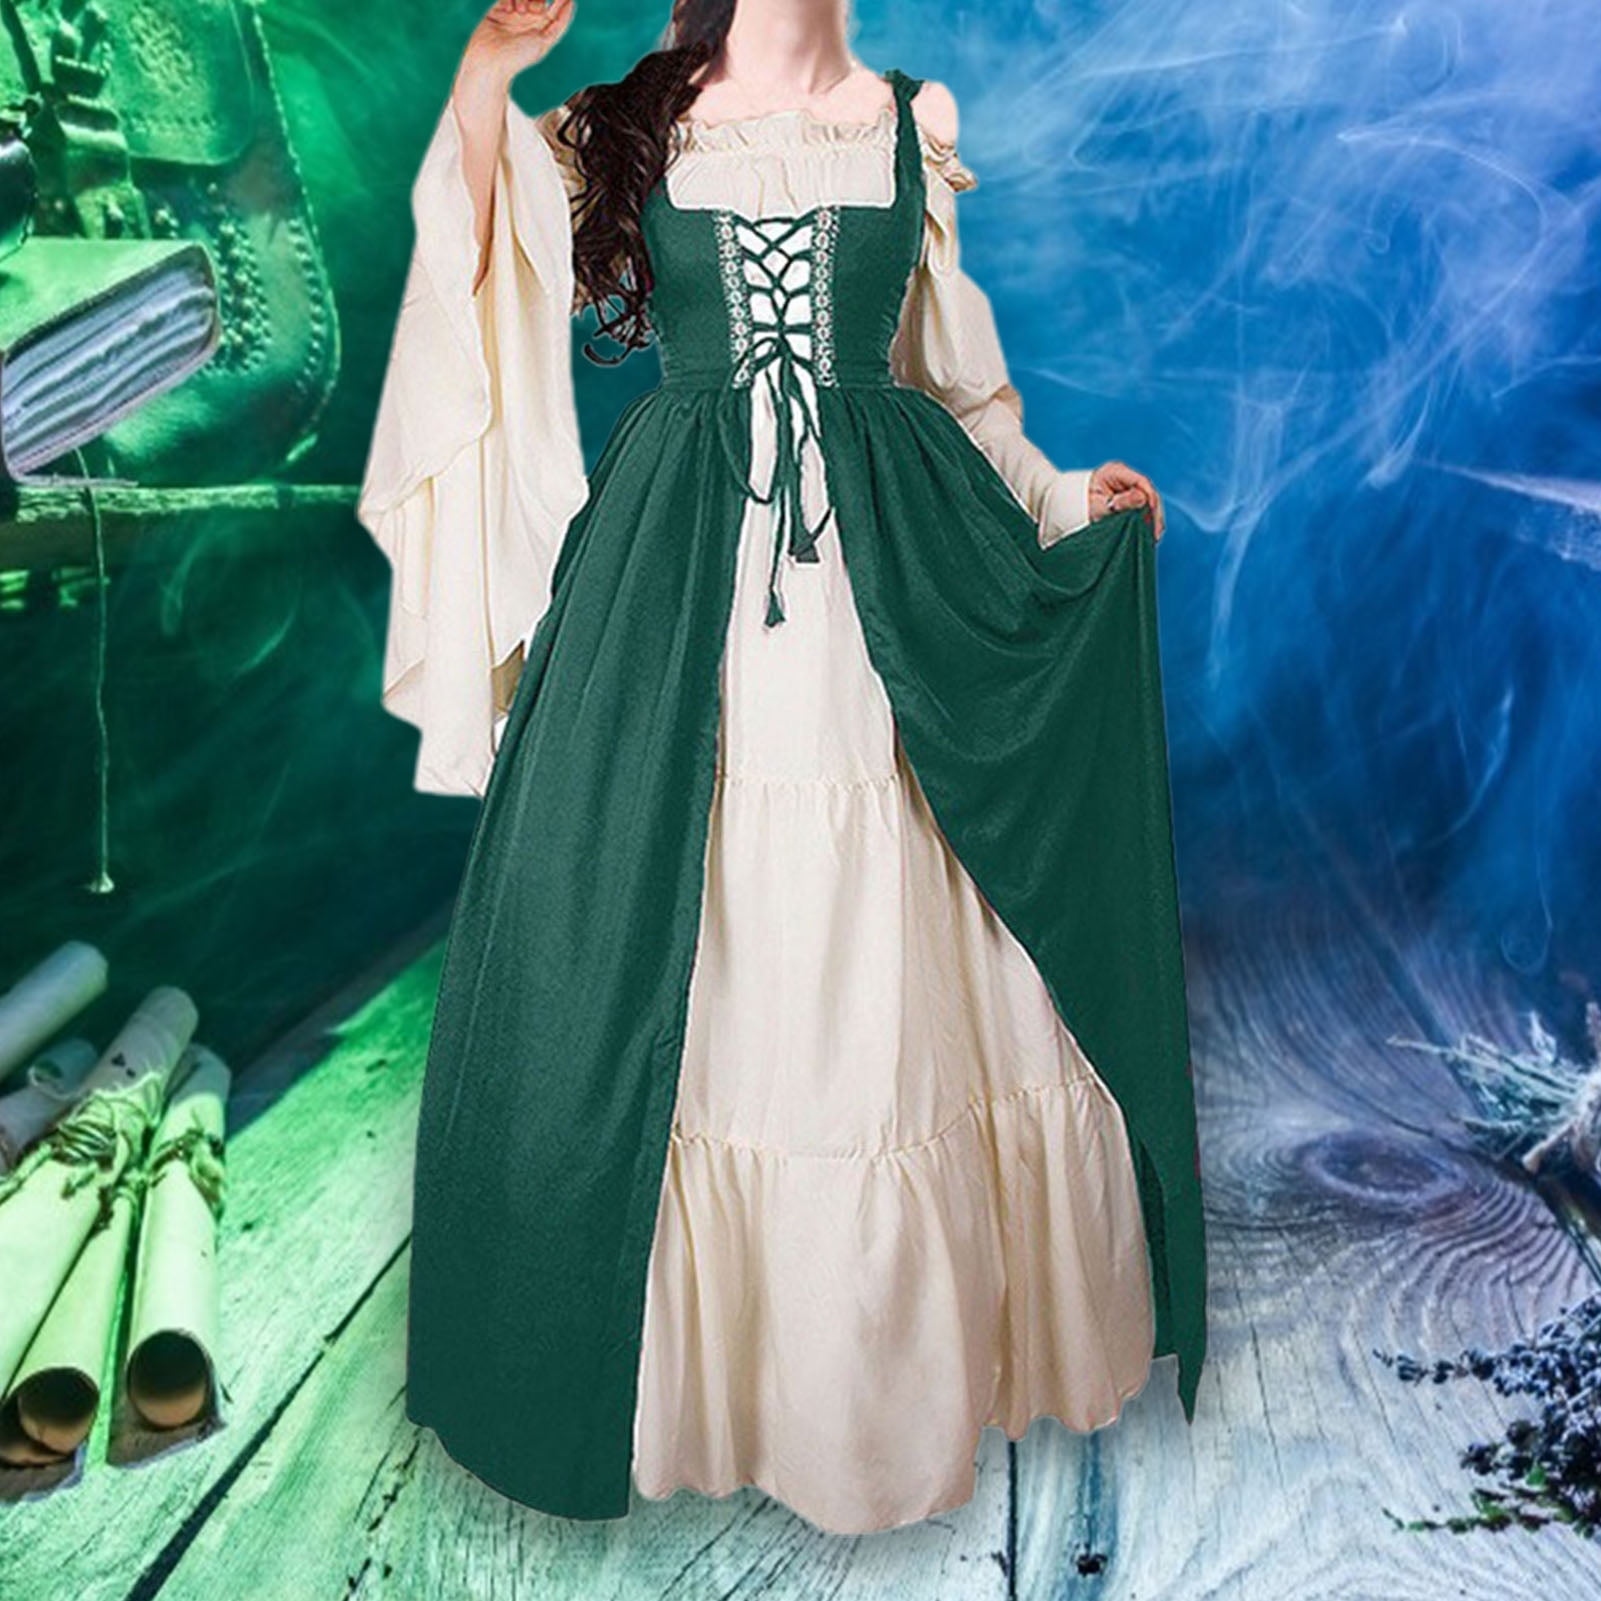 Renaissance Dress Gown Women's Medieval Dress with Lace Decoration  Halloween Party Renaissance Fair Dress